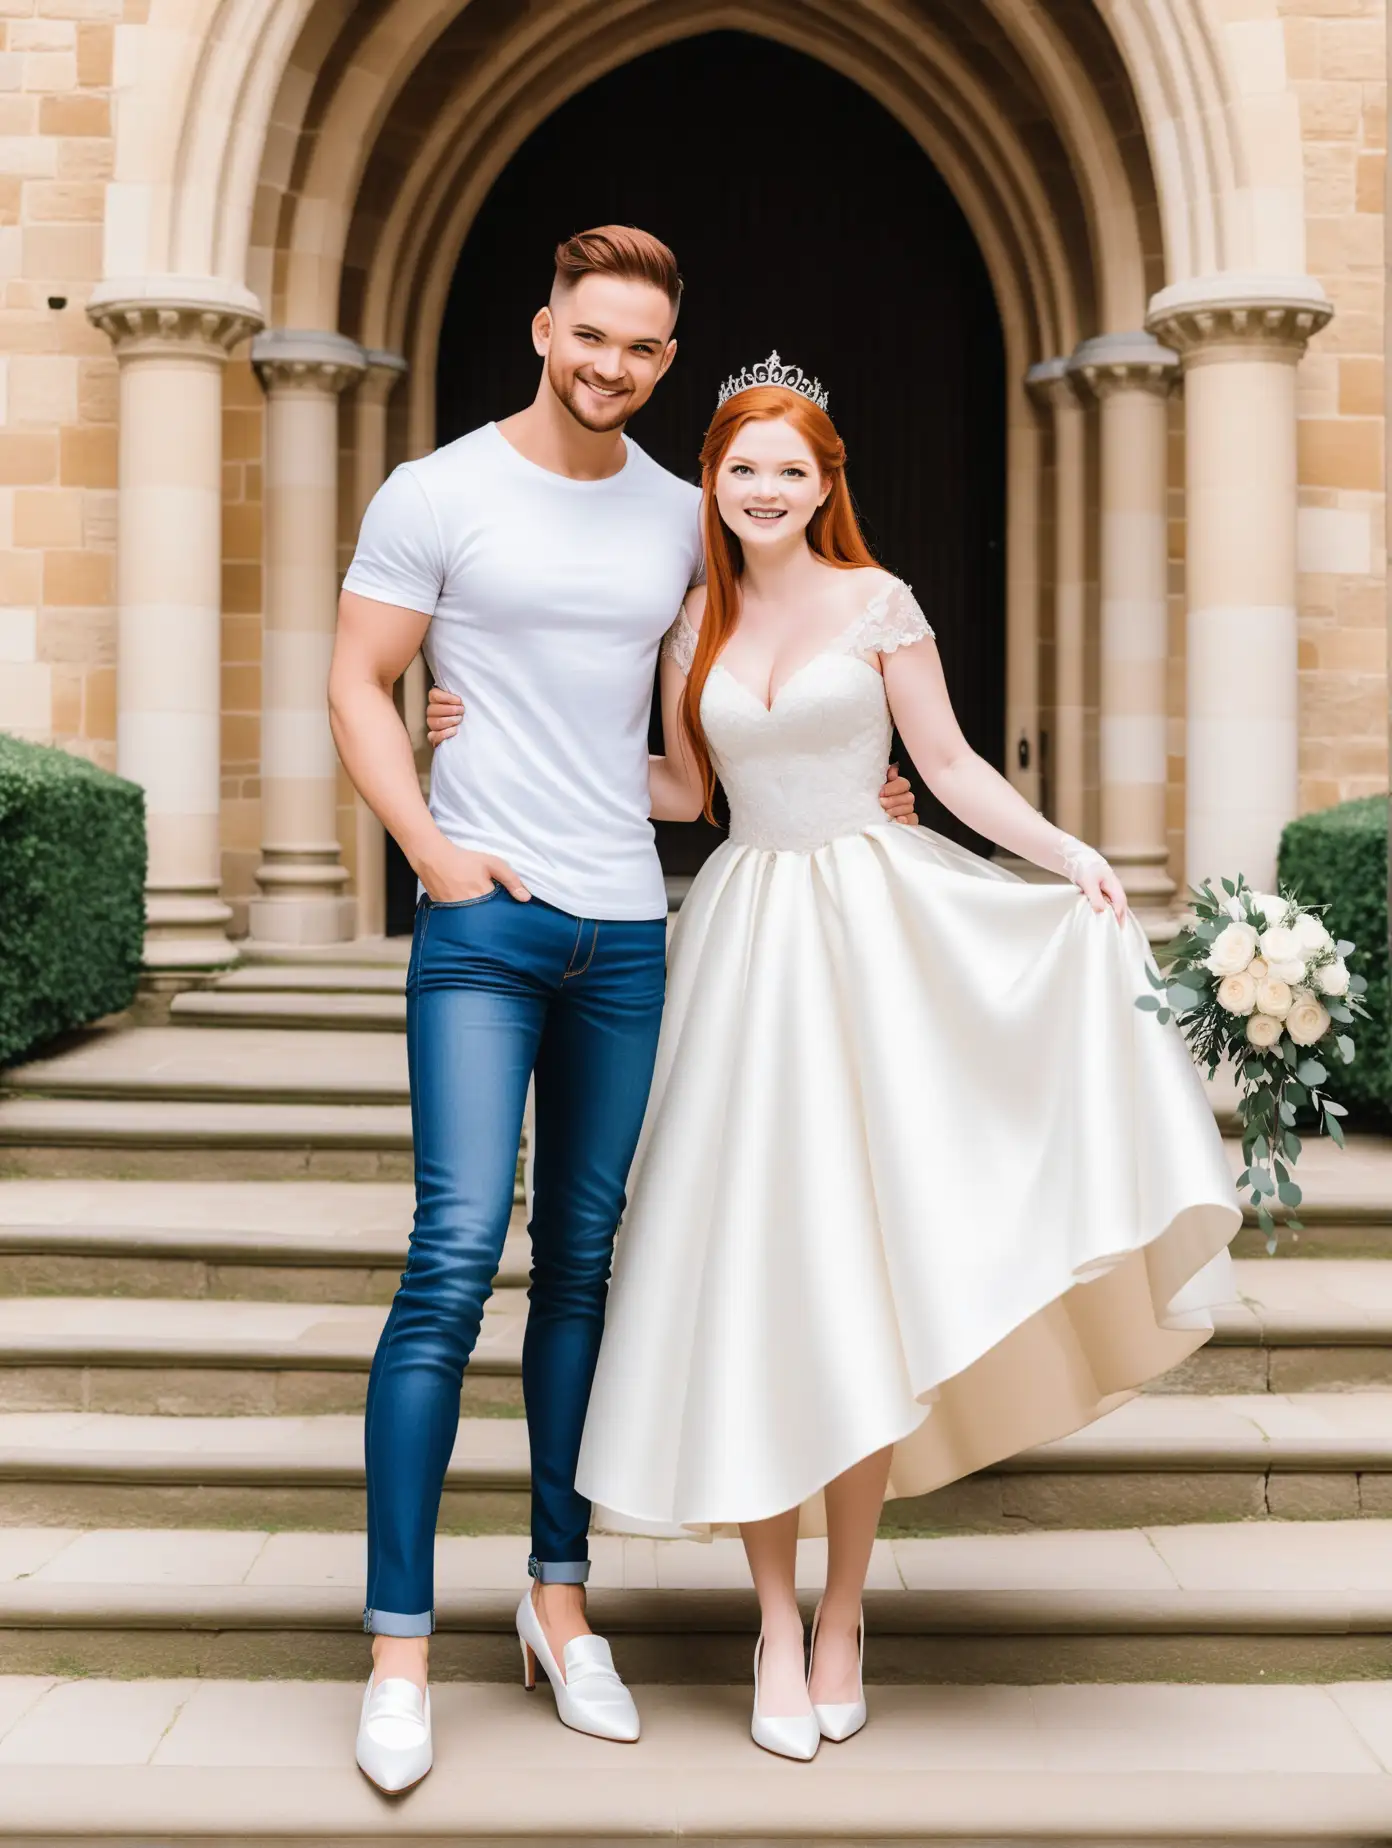 Ginny Weasleys Elegant Wedding Photoshoot with Her Dashing Groom